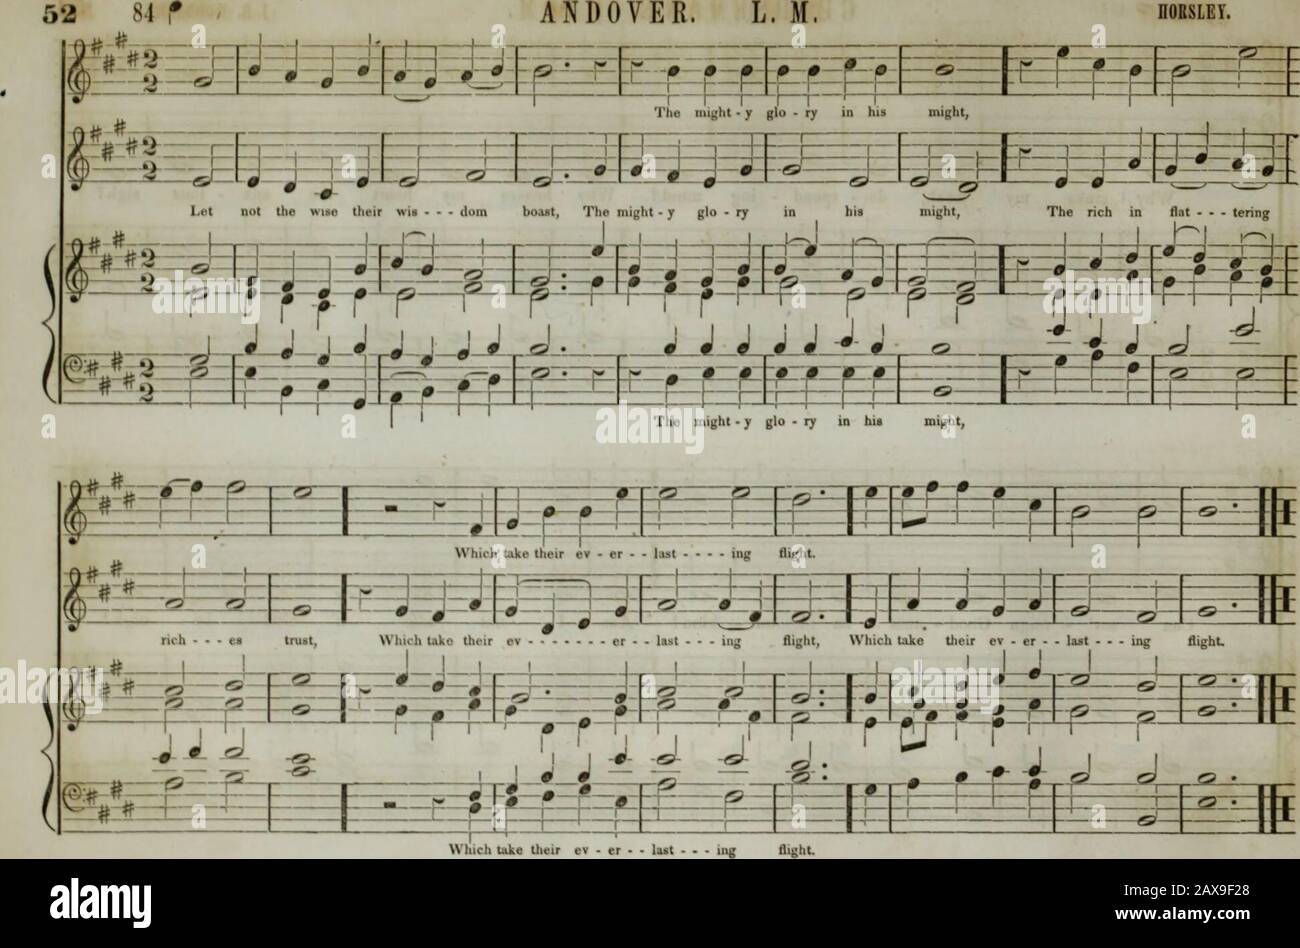 La collection de musique d'église de la Boston Musical Education Society : composée de musiques originales de psaume et d'hymnes, de pièces, de chants et de c.; y compris des compositions adaptées au service de l'Église épiscopale protestante . HAMILTON, L. M. I. B. WOODBRRT. 53 #» jusqu'au Seigneur, qui règne sur moi ! 1 Et vues le na - tions de A - - loin, Soit ± F. — enfin - en louant * * * Et en racontant la taille de ses salons. I UN frv f1 jtfc IF. TVF.x 1 ffToi ^ f11 r i Ml i 111 ! ! ! ! MOI ! ! si. ! I Banque D'Images